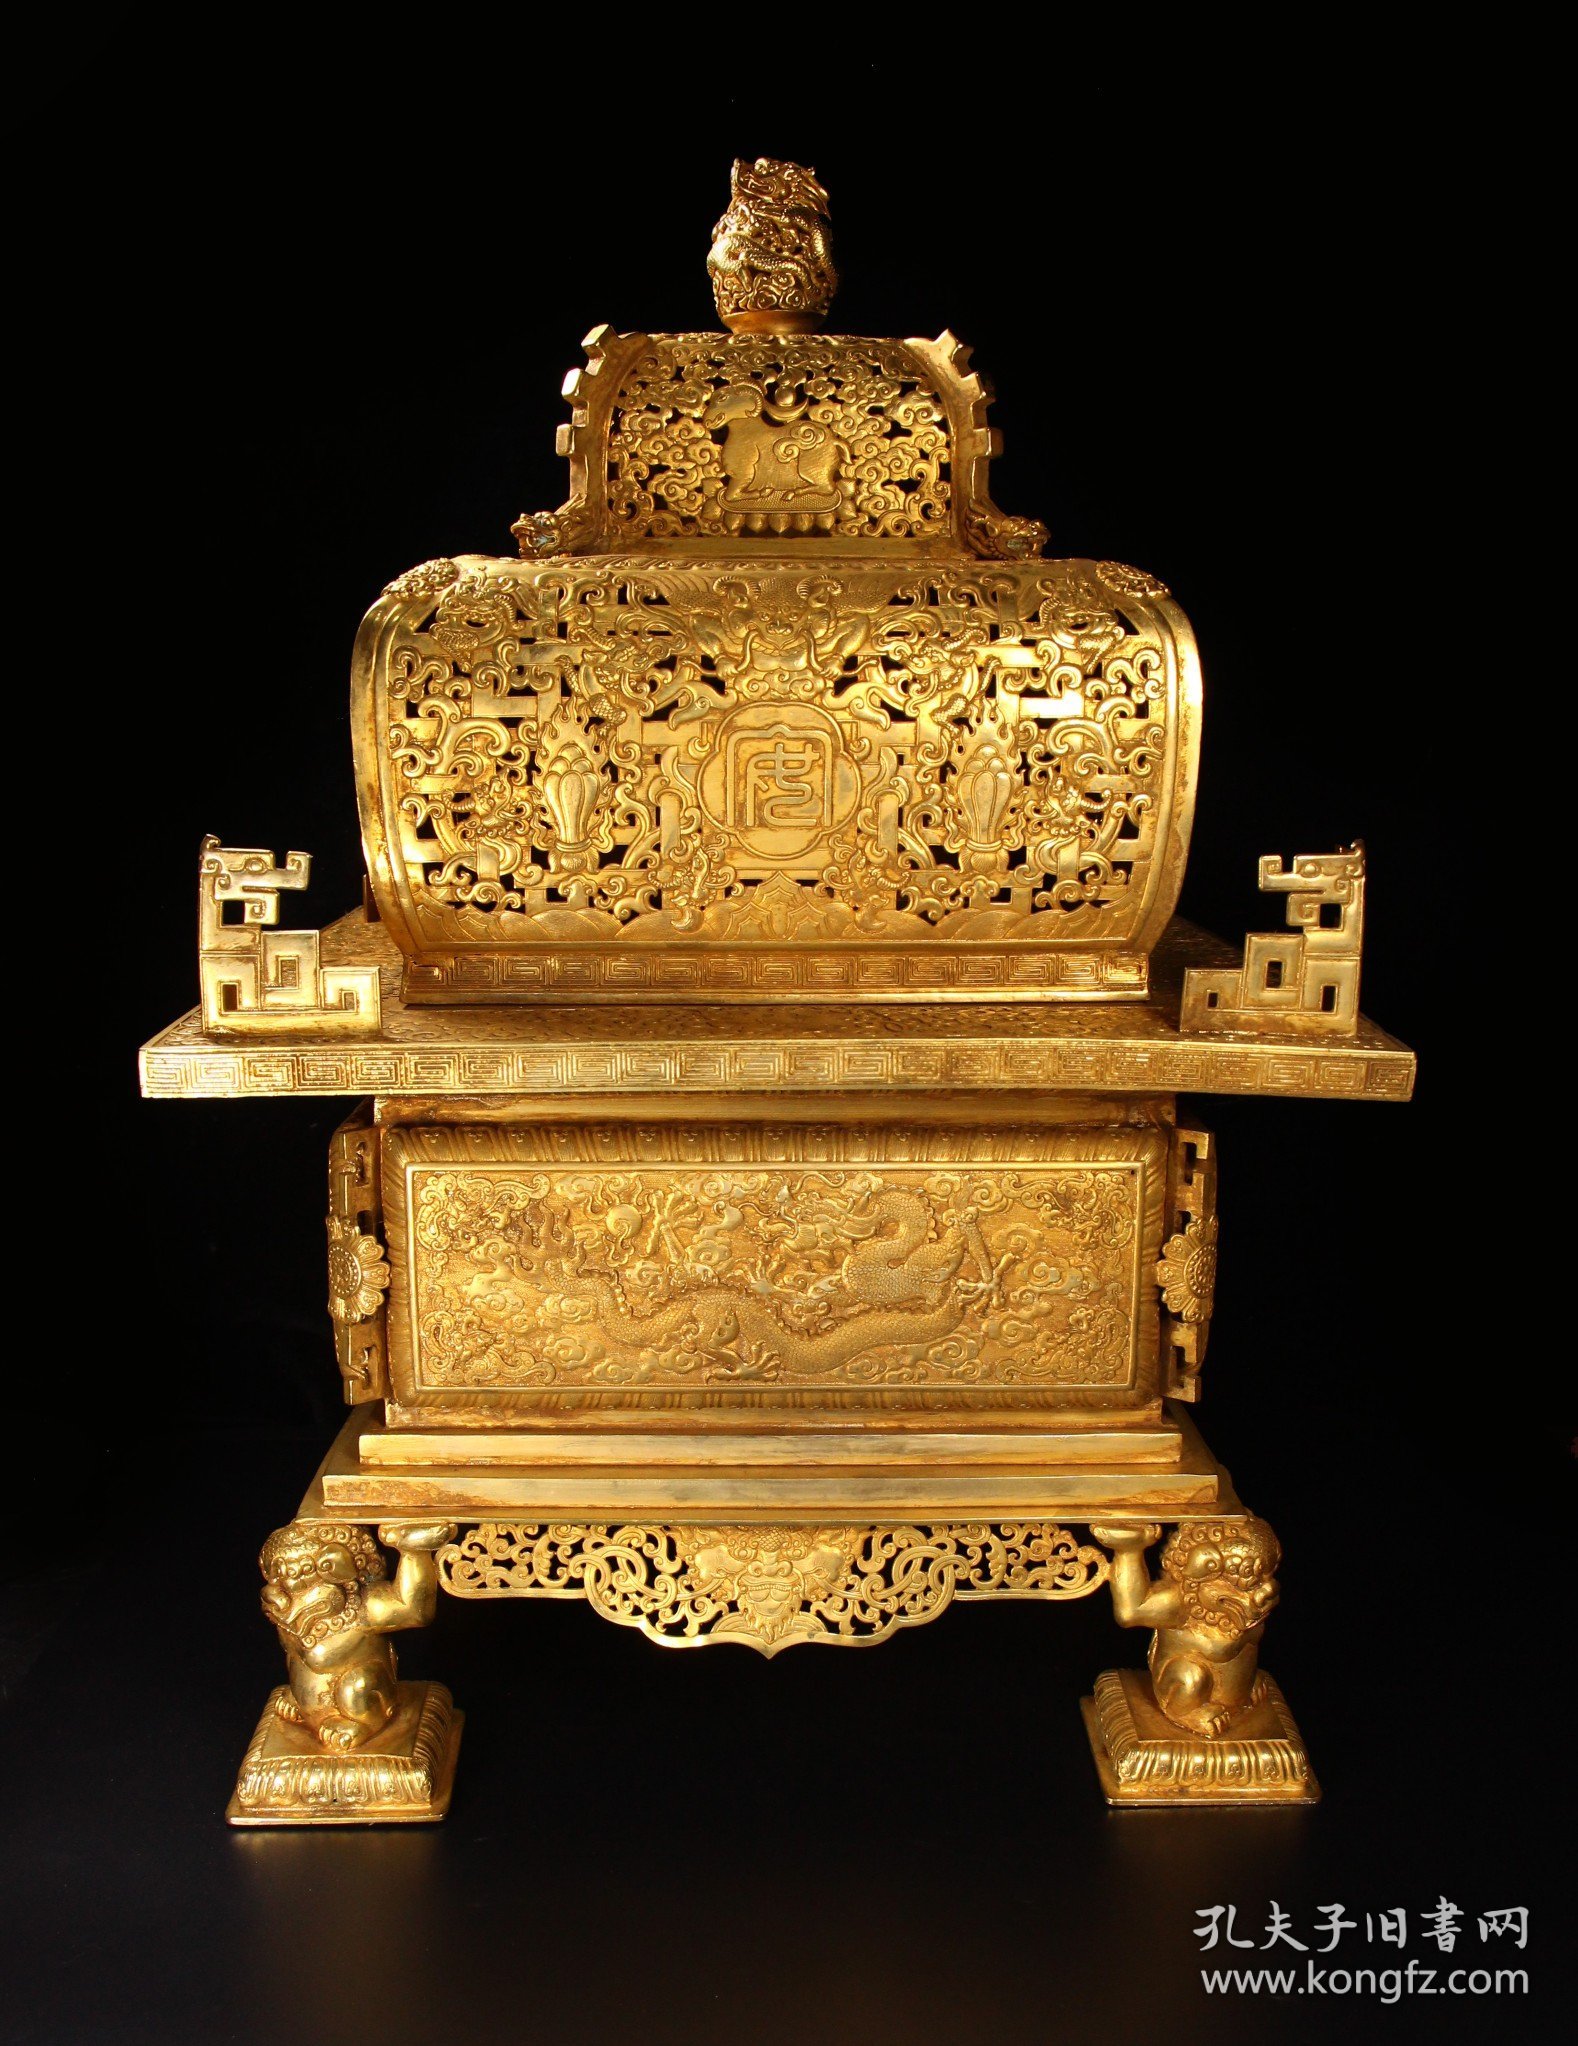 珍藏老铜鎏金手工錾刻四方炉
长宽41厘米，高60厘米，重22430克
特价5万元.